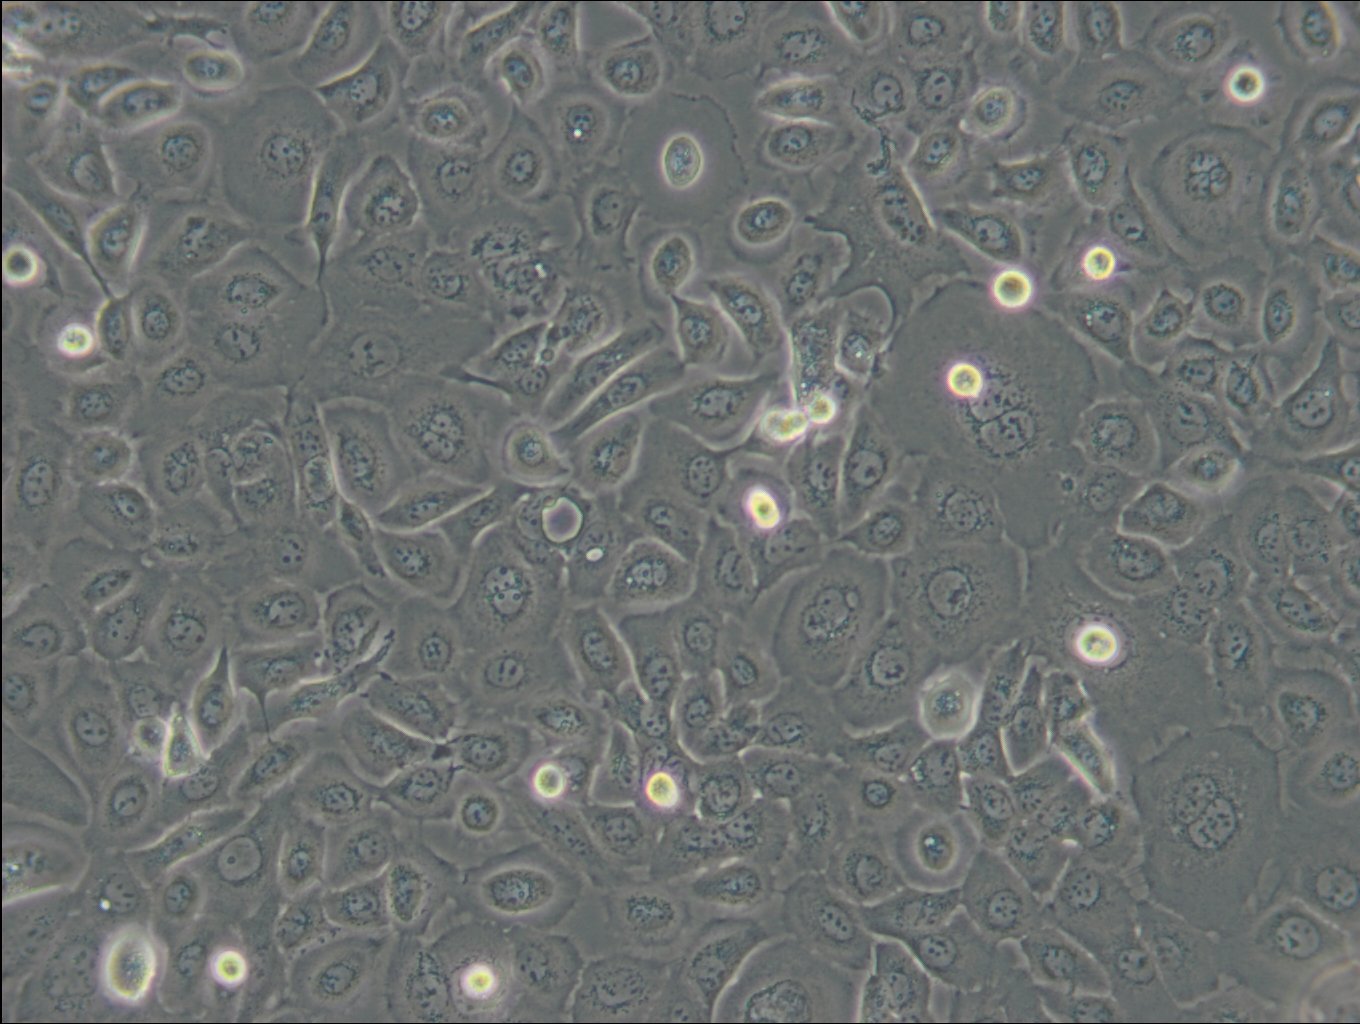 TE-1 Cells